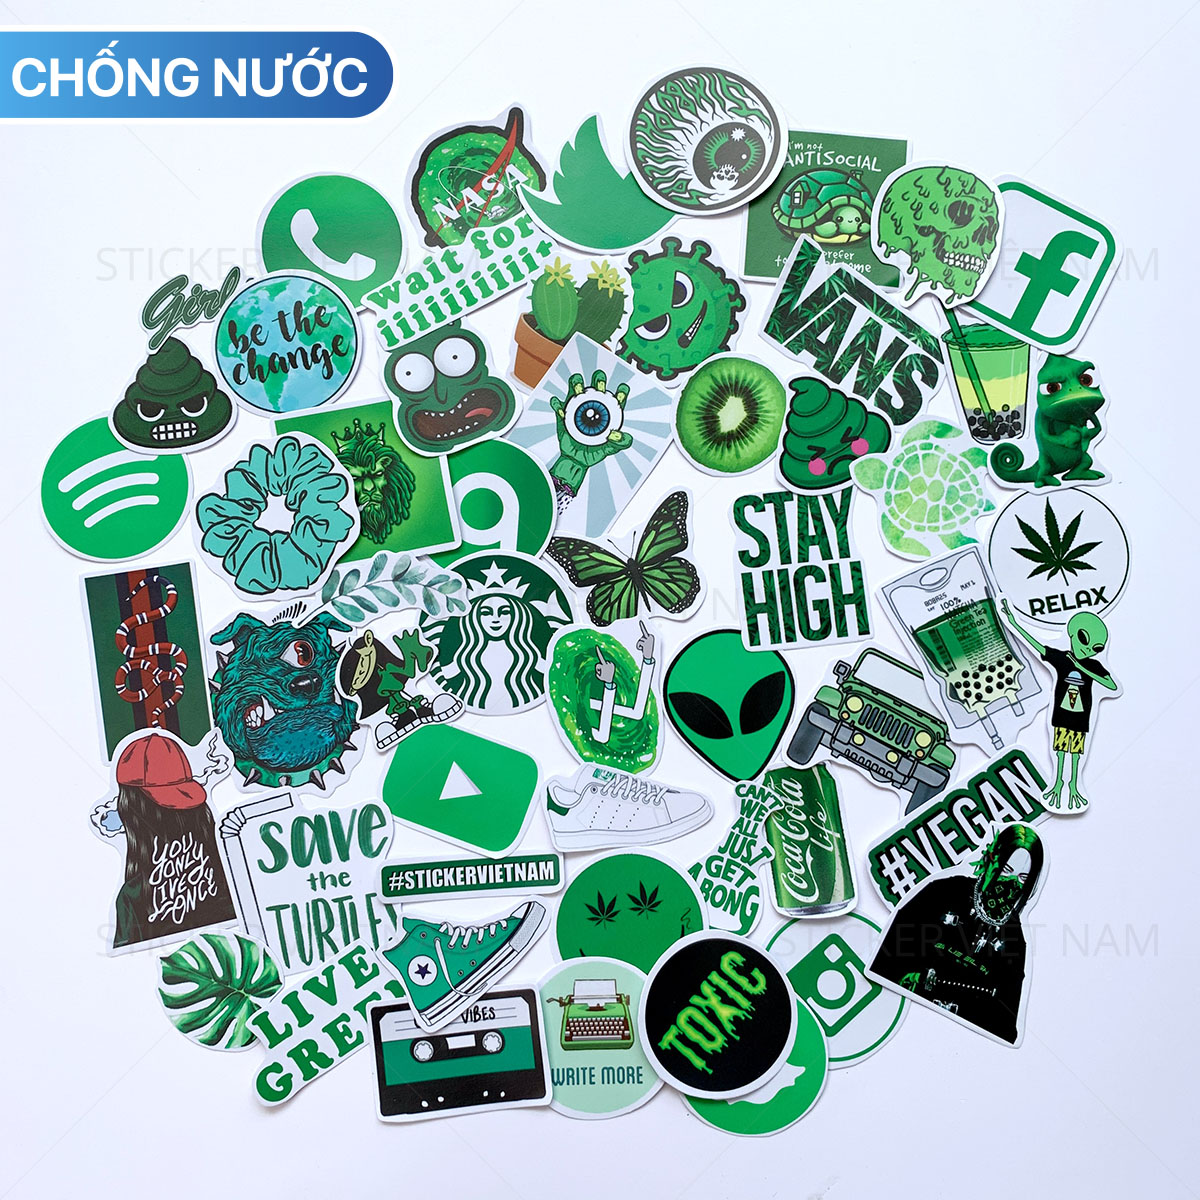 Sticker Màu Xanh Lá Green - Chất Liệu PVC Chất Lượng Cao Chống Nước - Kích Thước 4-8cm